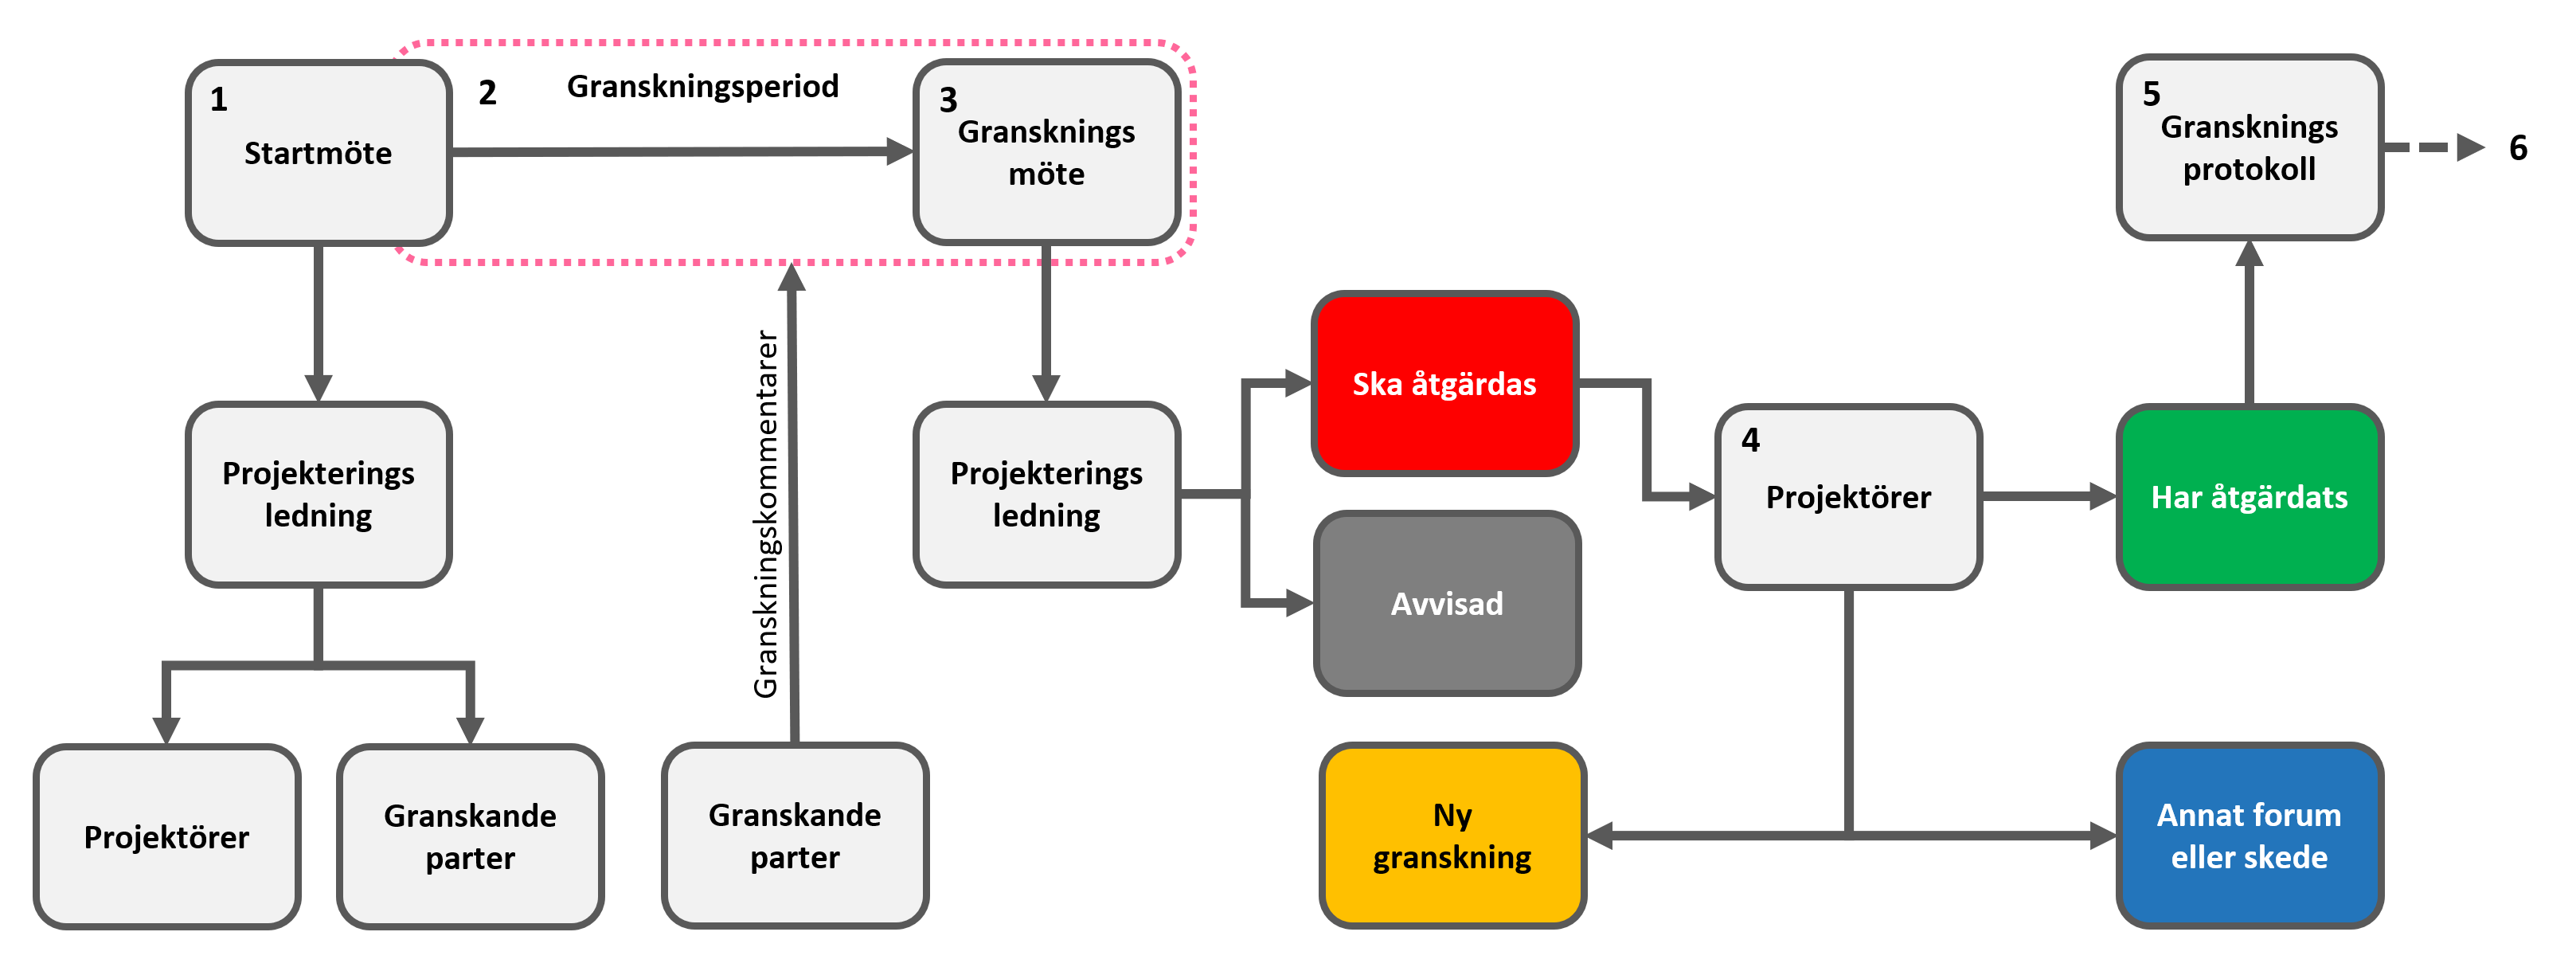 Figur 1: Processkarta som beskriver granskningsprocessen